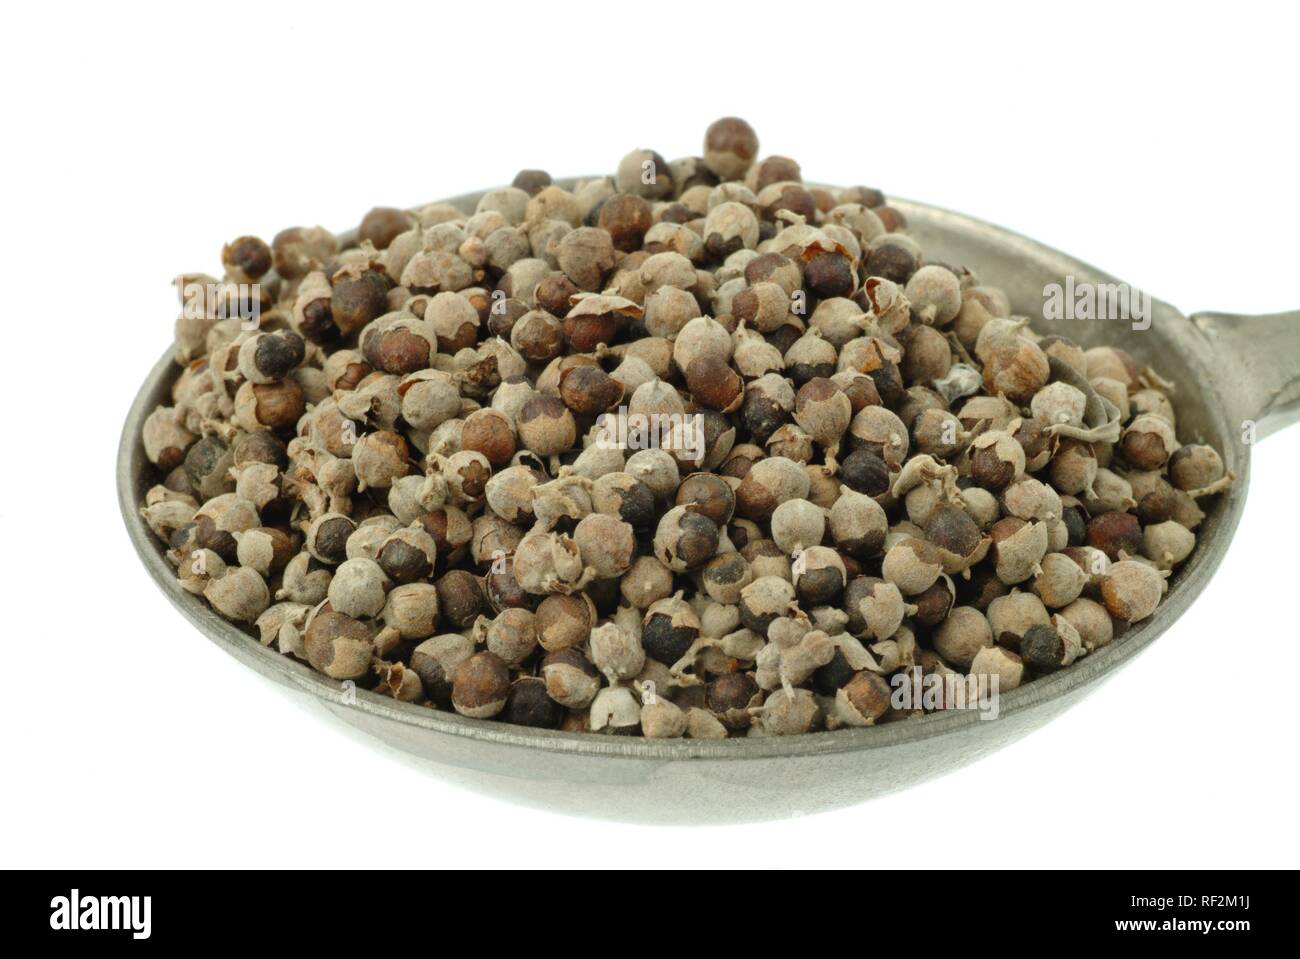 Vitex, keusch Baum, Chasteberry oder Mönchspfeffer (Vitex agnus-castus) Samen in einem Messlöffel, Heilpflanzen Stockfoto